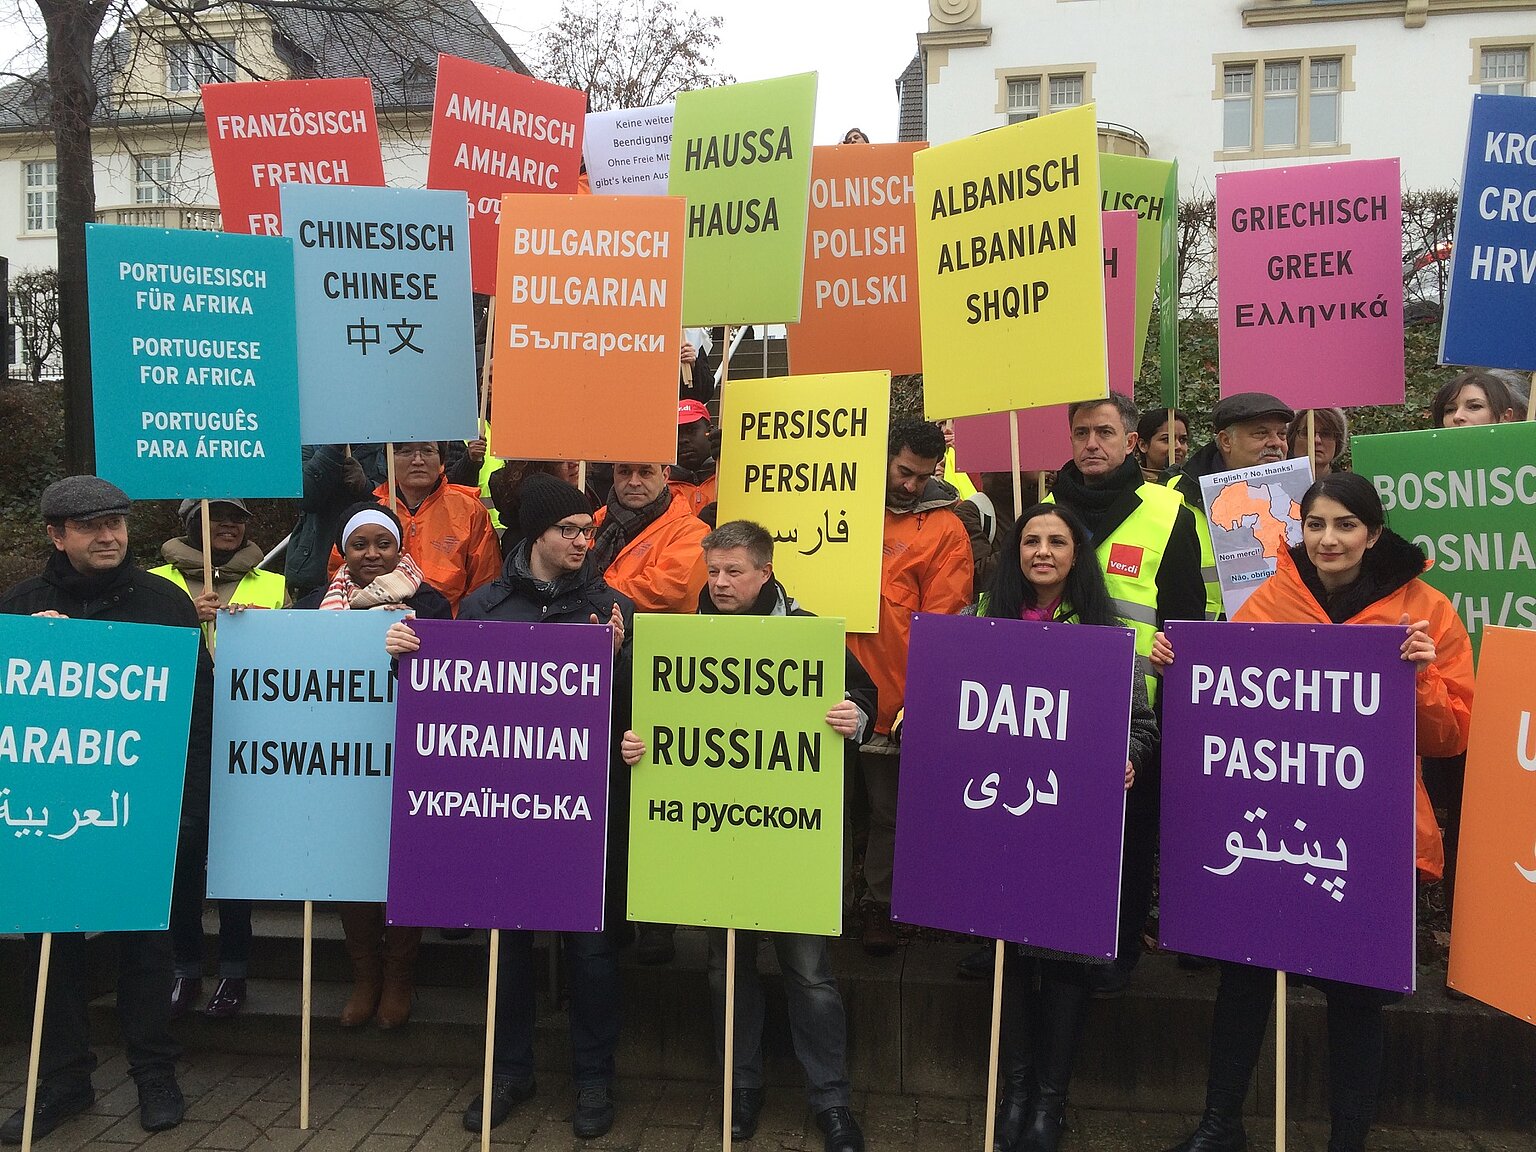  – Bunt ging es zu: Mit den Sprachen, die die Deutsche Welle spricht, plakatierten die DW-Mitarbeiter ihren Protest. Foto: Daniel Scheschkewitz